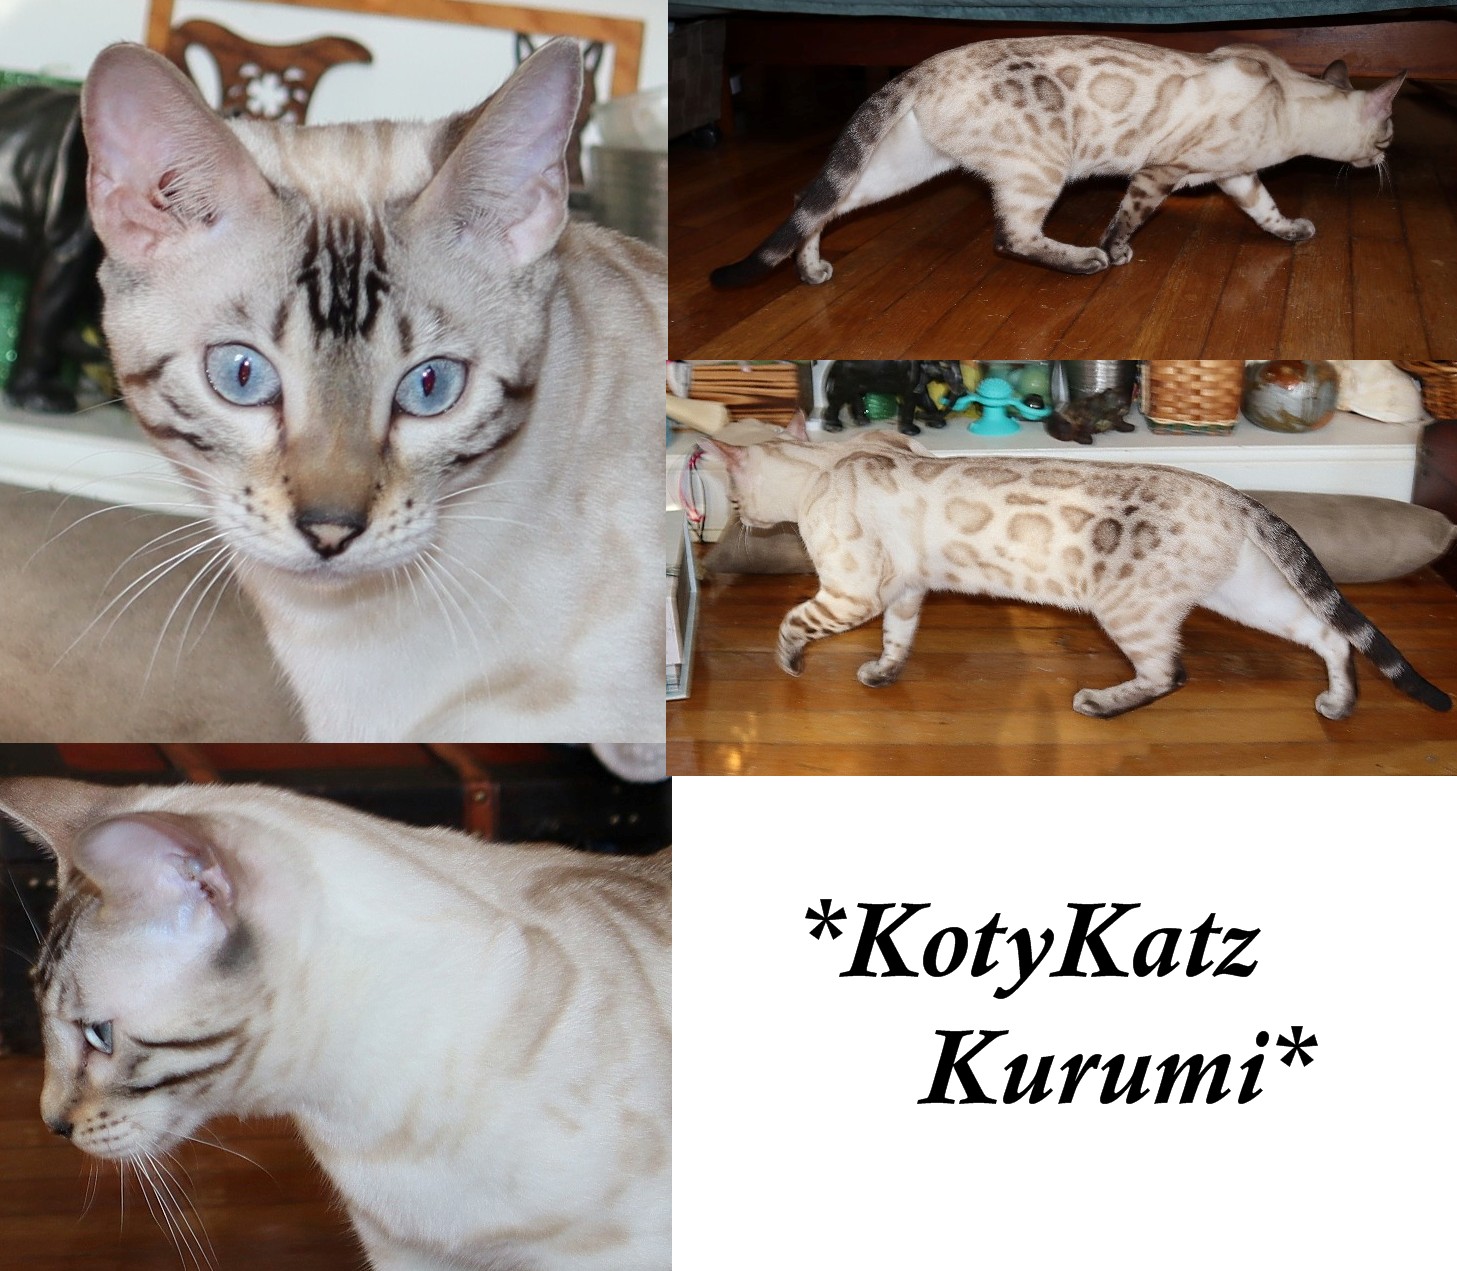 KotyKatz Kurumi 10 Months